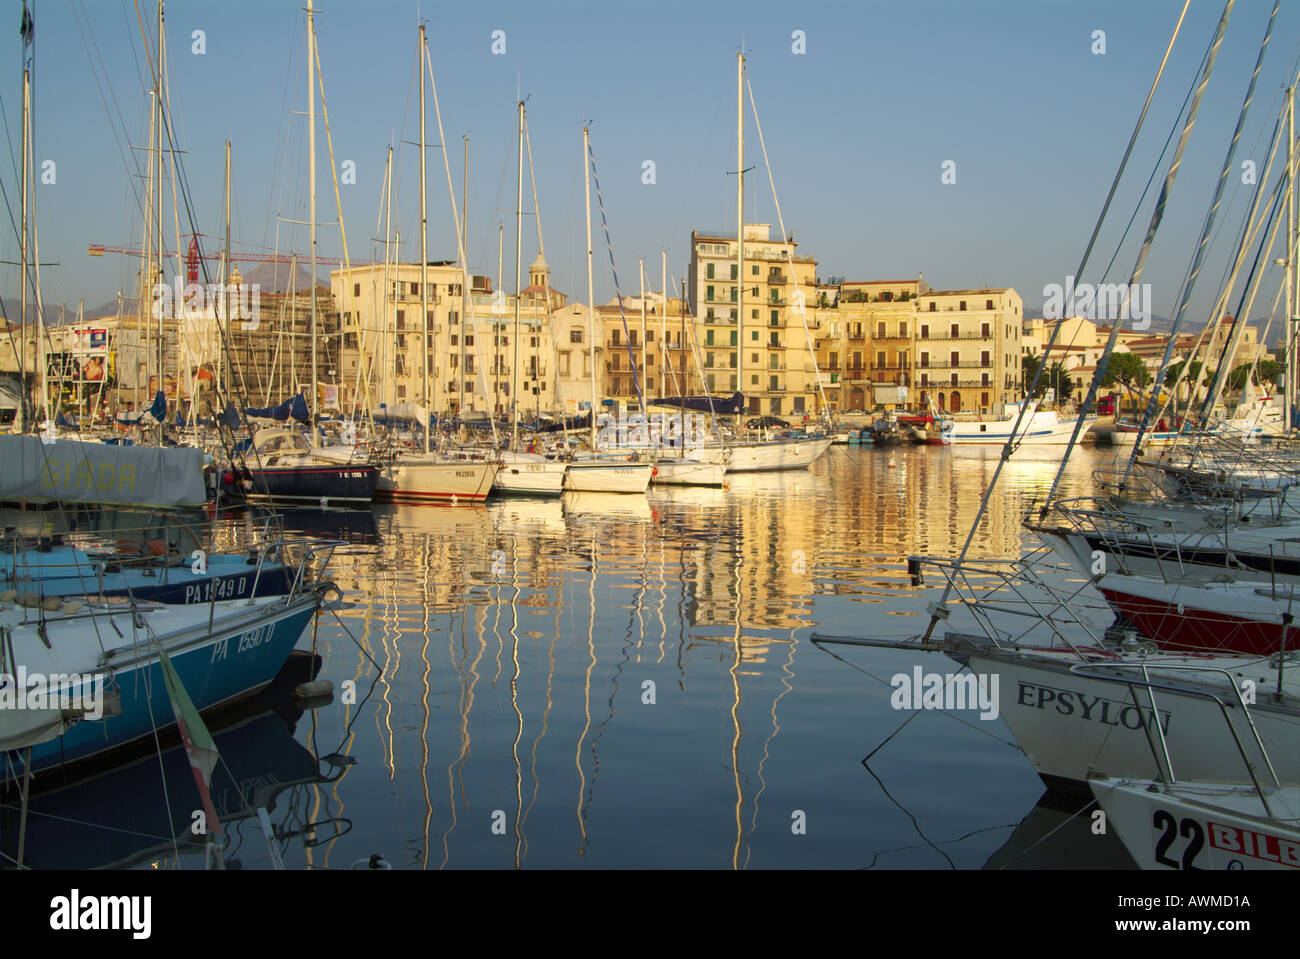 Bateaux au port de plaisance, La Cala, Palerme, Sicile, Italie Banque D'Images